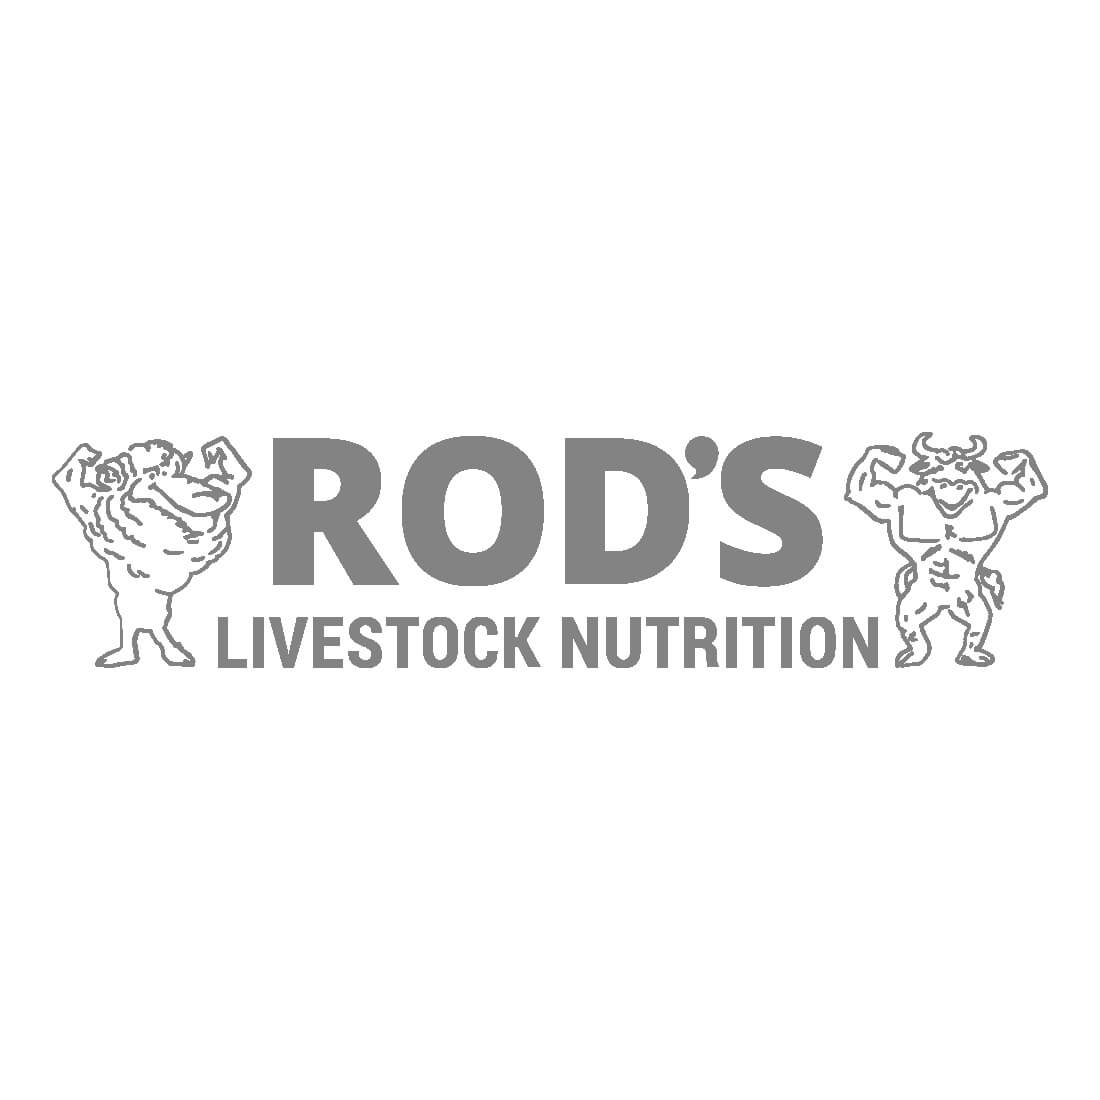 Rods Livestock Nutrition